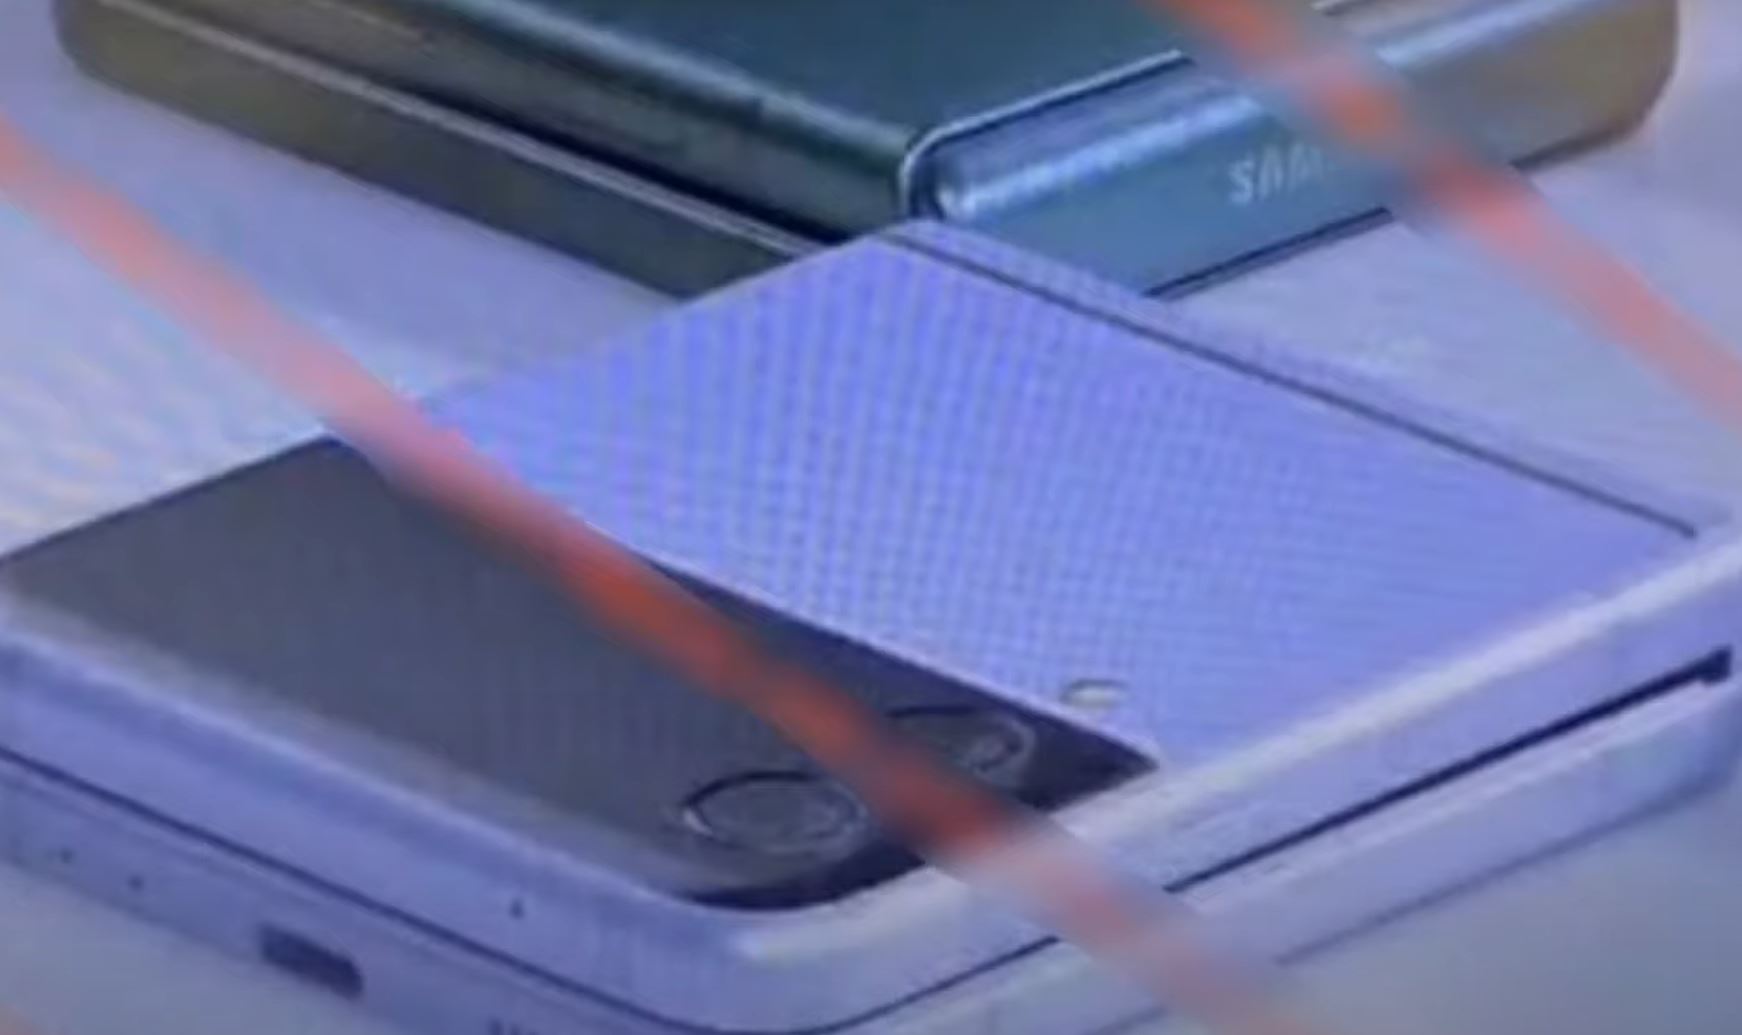 Le Samsung Galaxy Z Flip 3 fuite en vidéo et nous laisse entrevoir son design